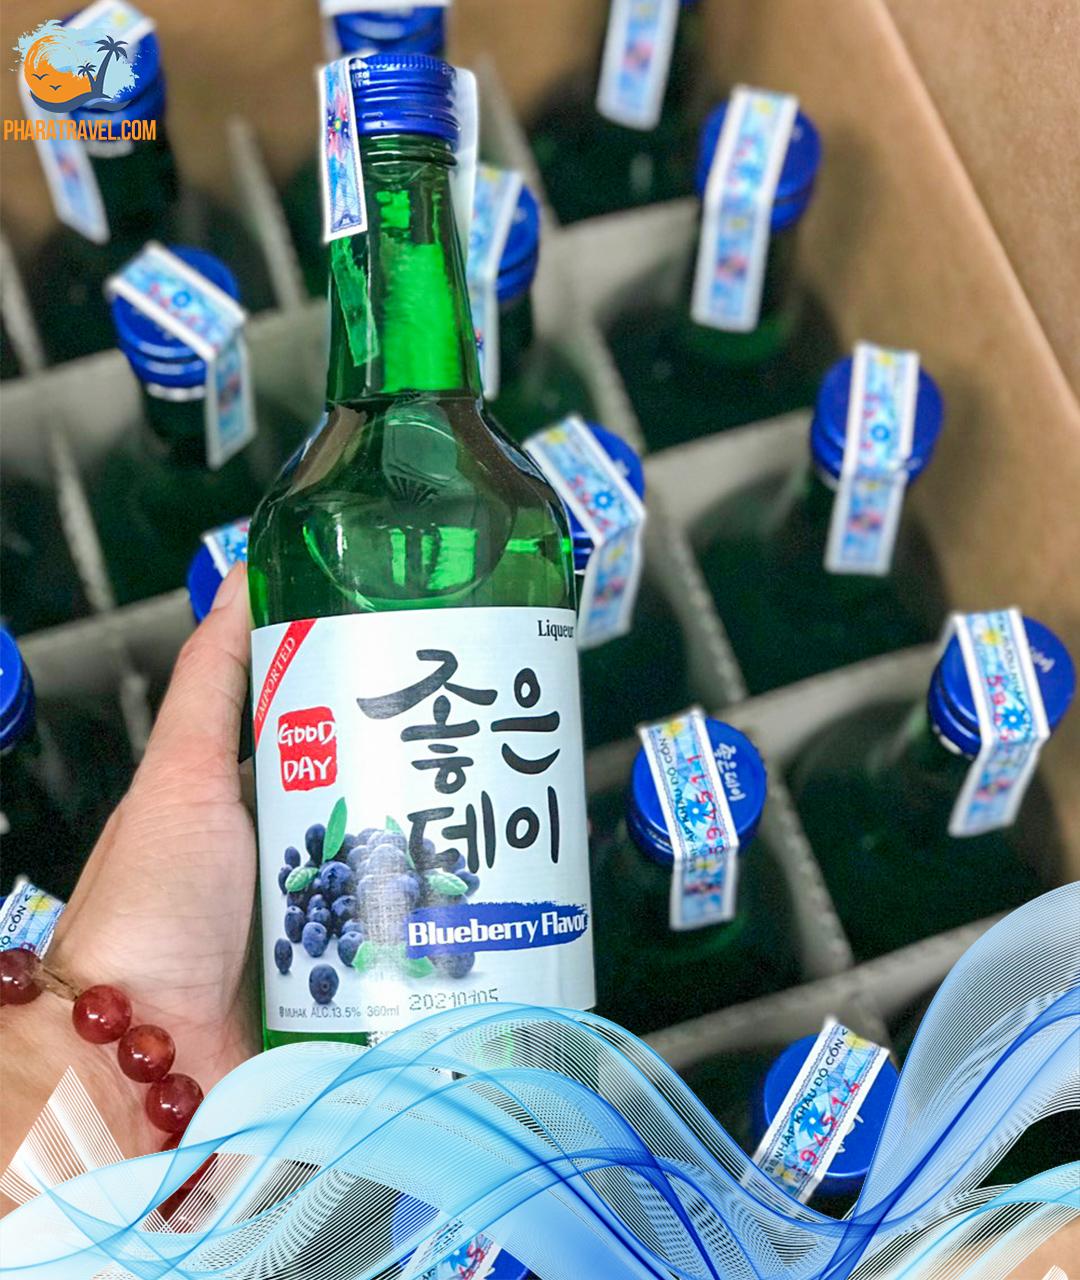 Rượu soju Phan Rang giá bao nhiêu? Rượu soju hàn quốc có những loại nào?